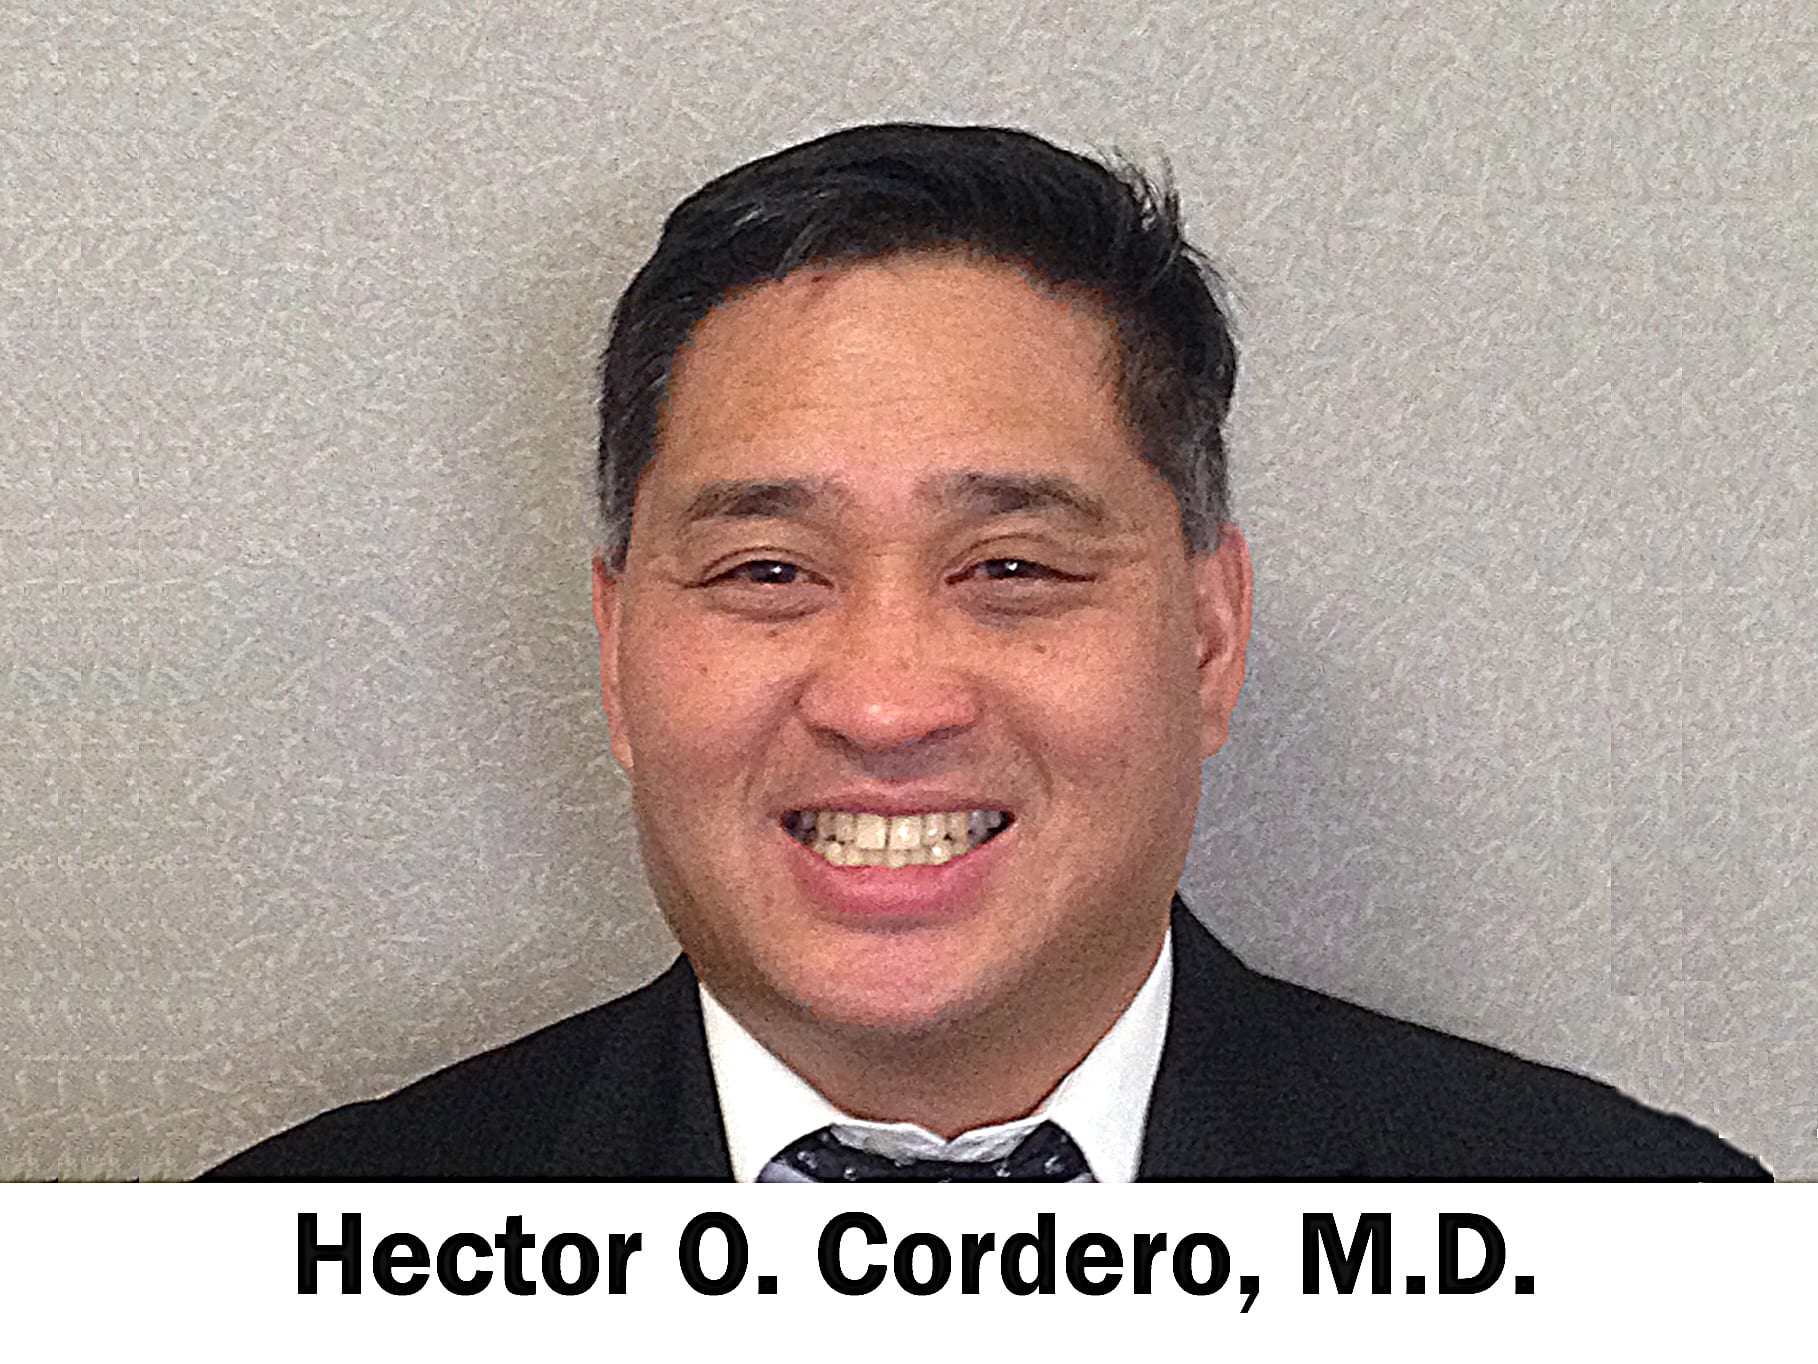 Dr. Hector Orlando Cordero